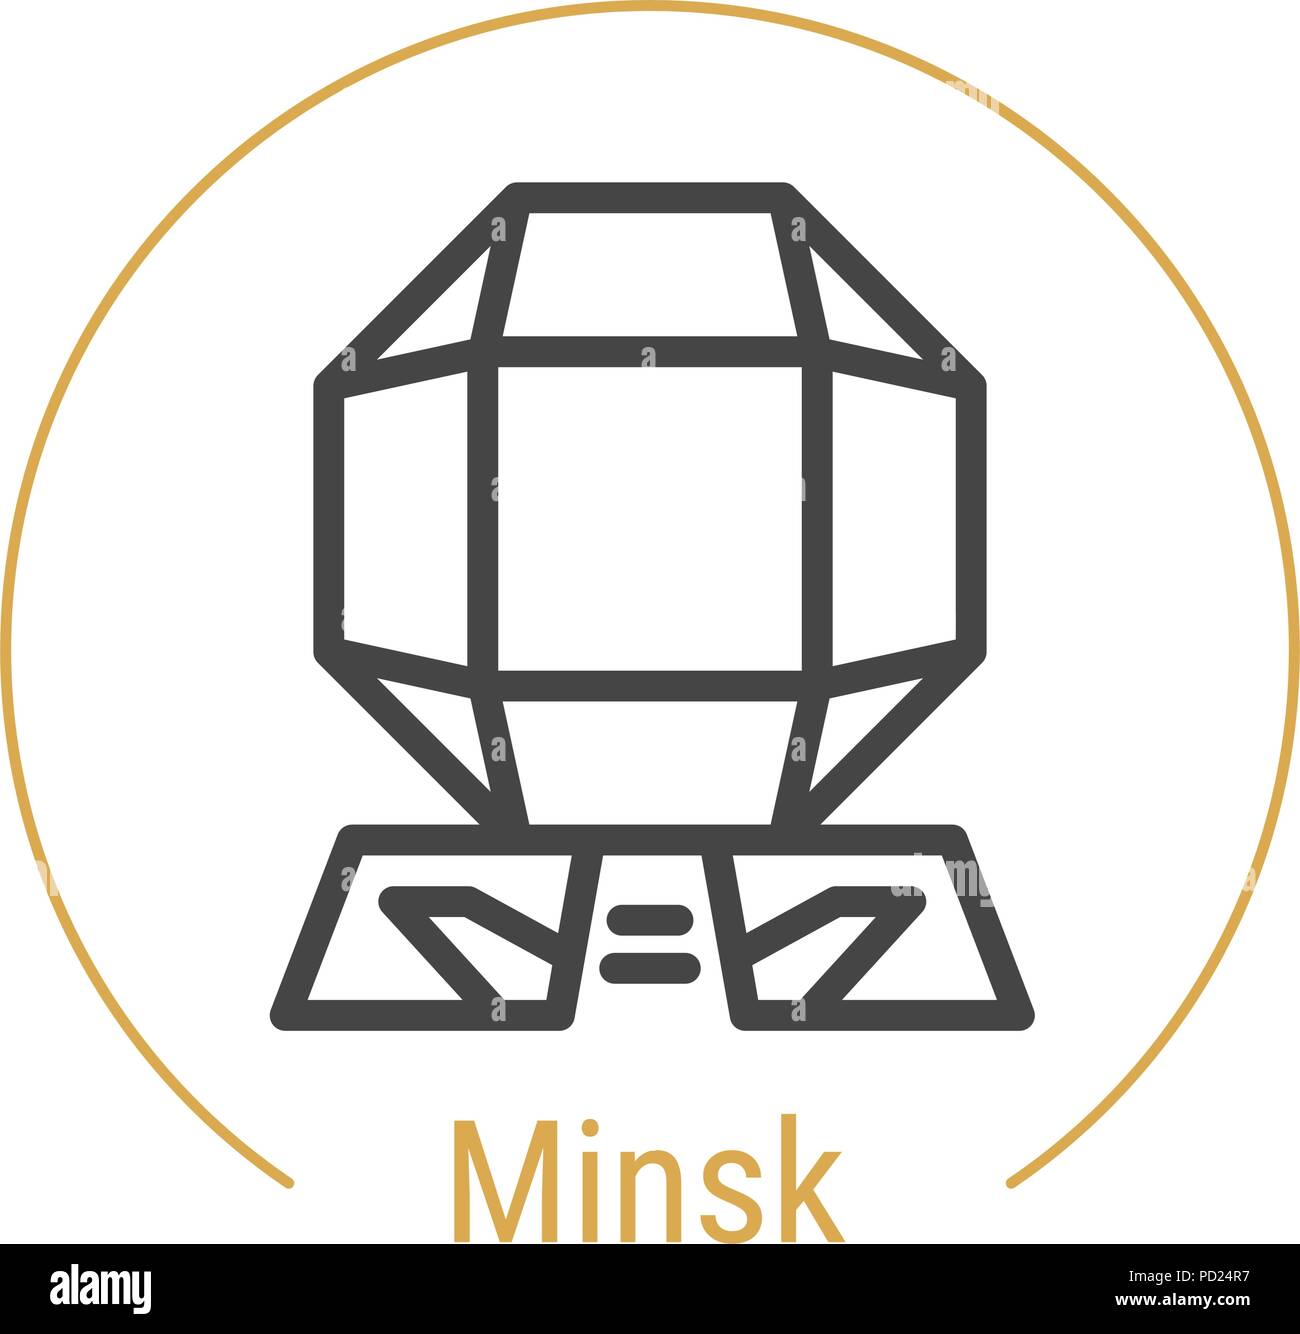 Minsk, Belarus Vector Line Icon Stock Vector